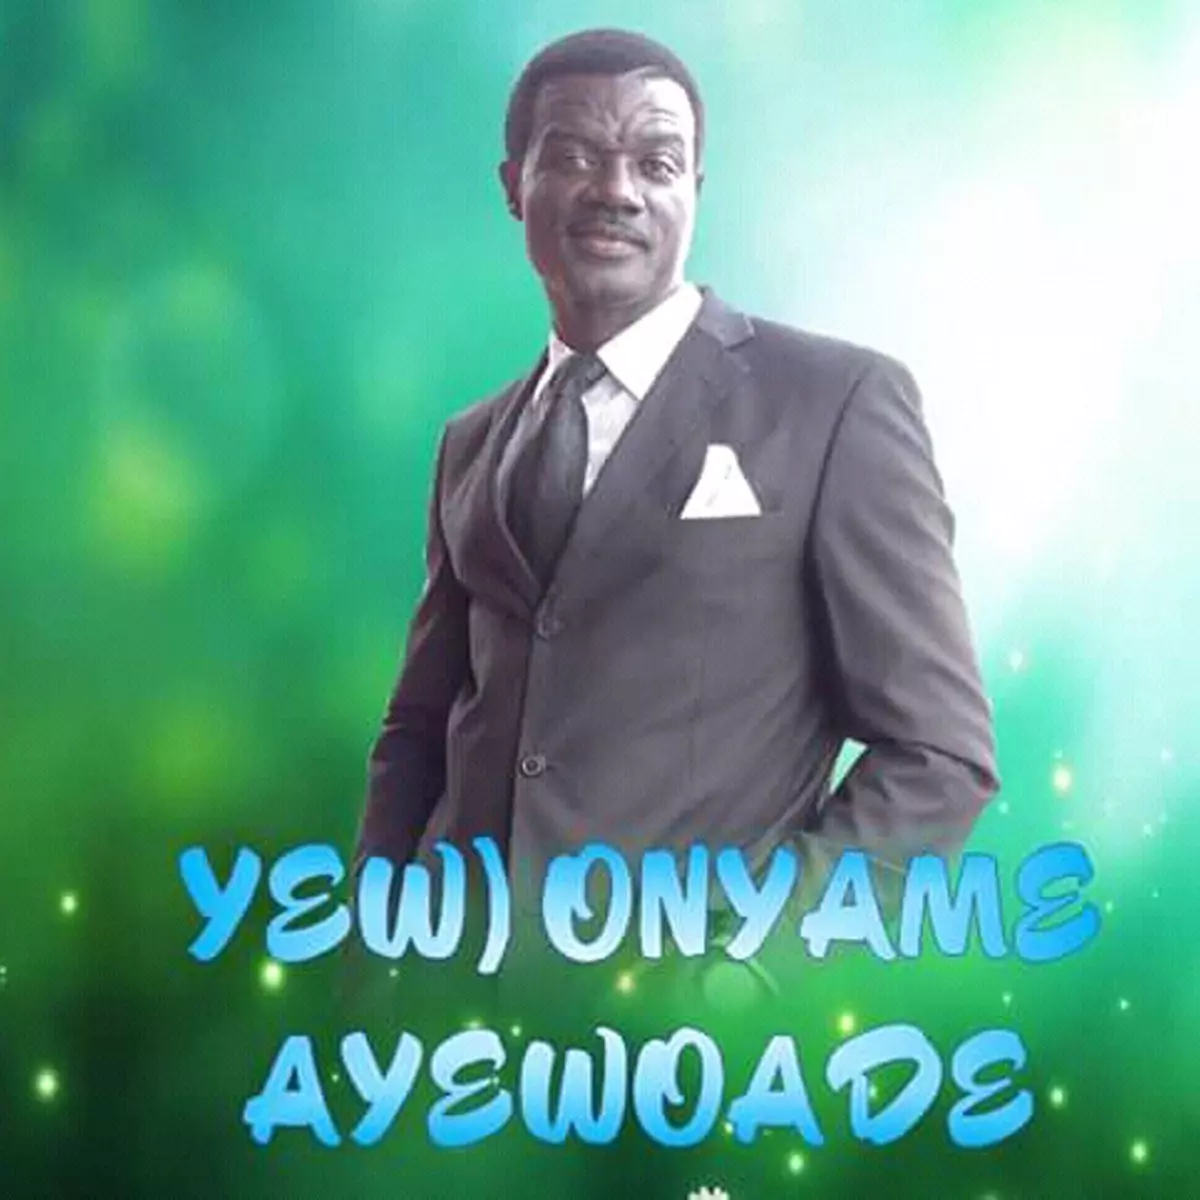 Yew Onyame Ayewoade - Single by Nana Yaw Asare on Apple Music